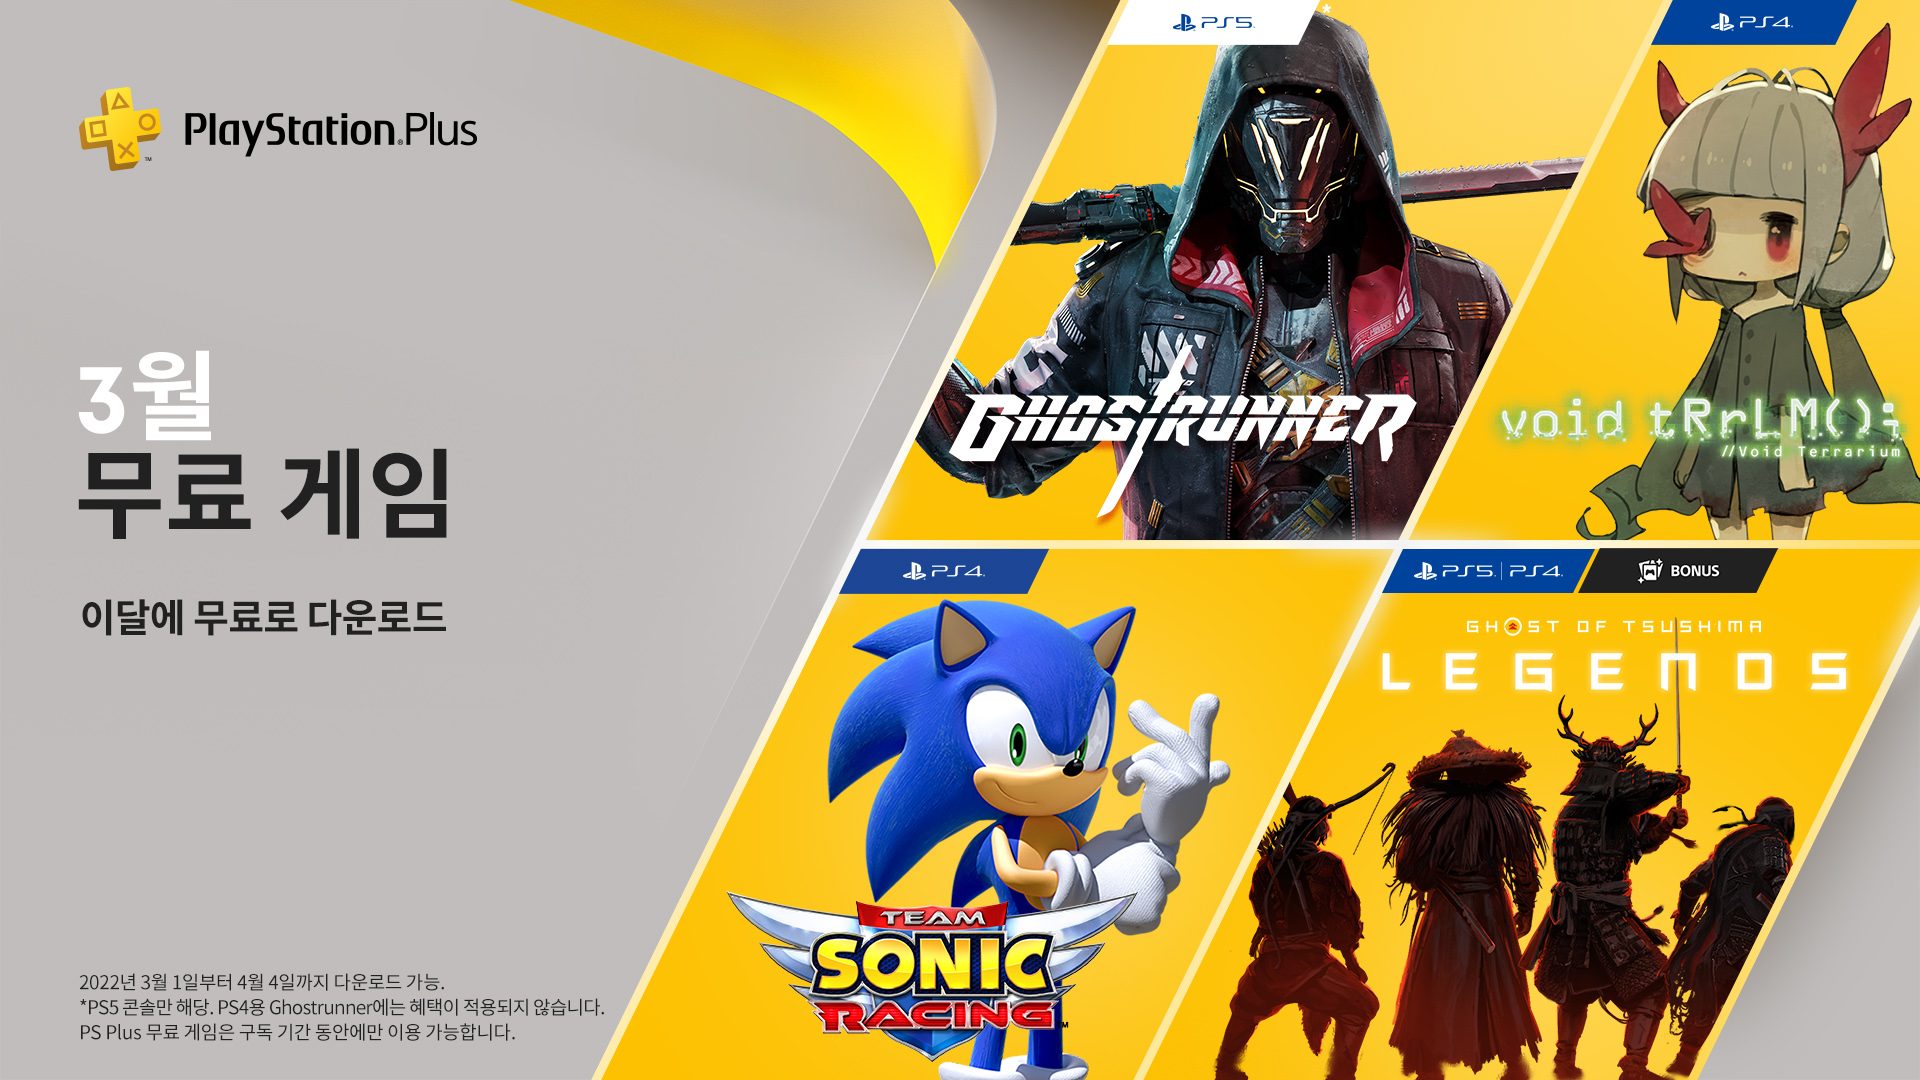 업데이트 보이드 테라리움, Team Sonic Racing, 고스트러너(Ghostrunner)가 3월의 PlayStation